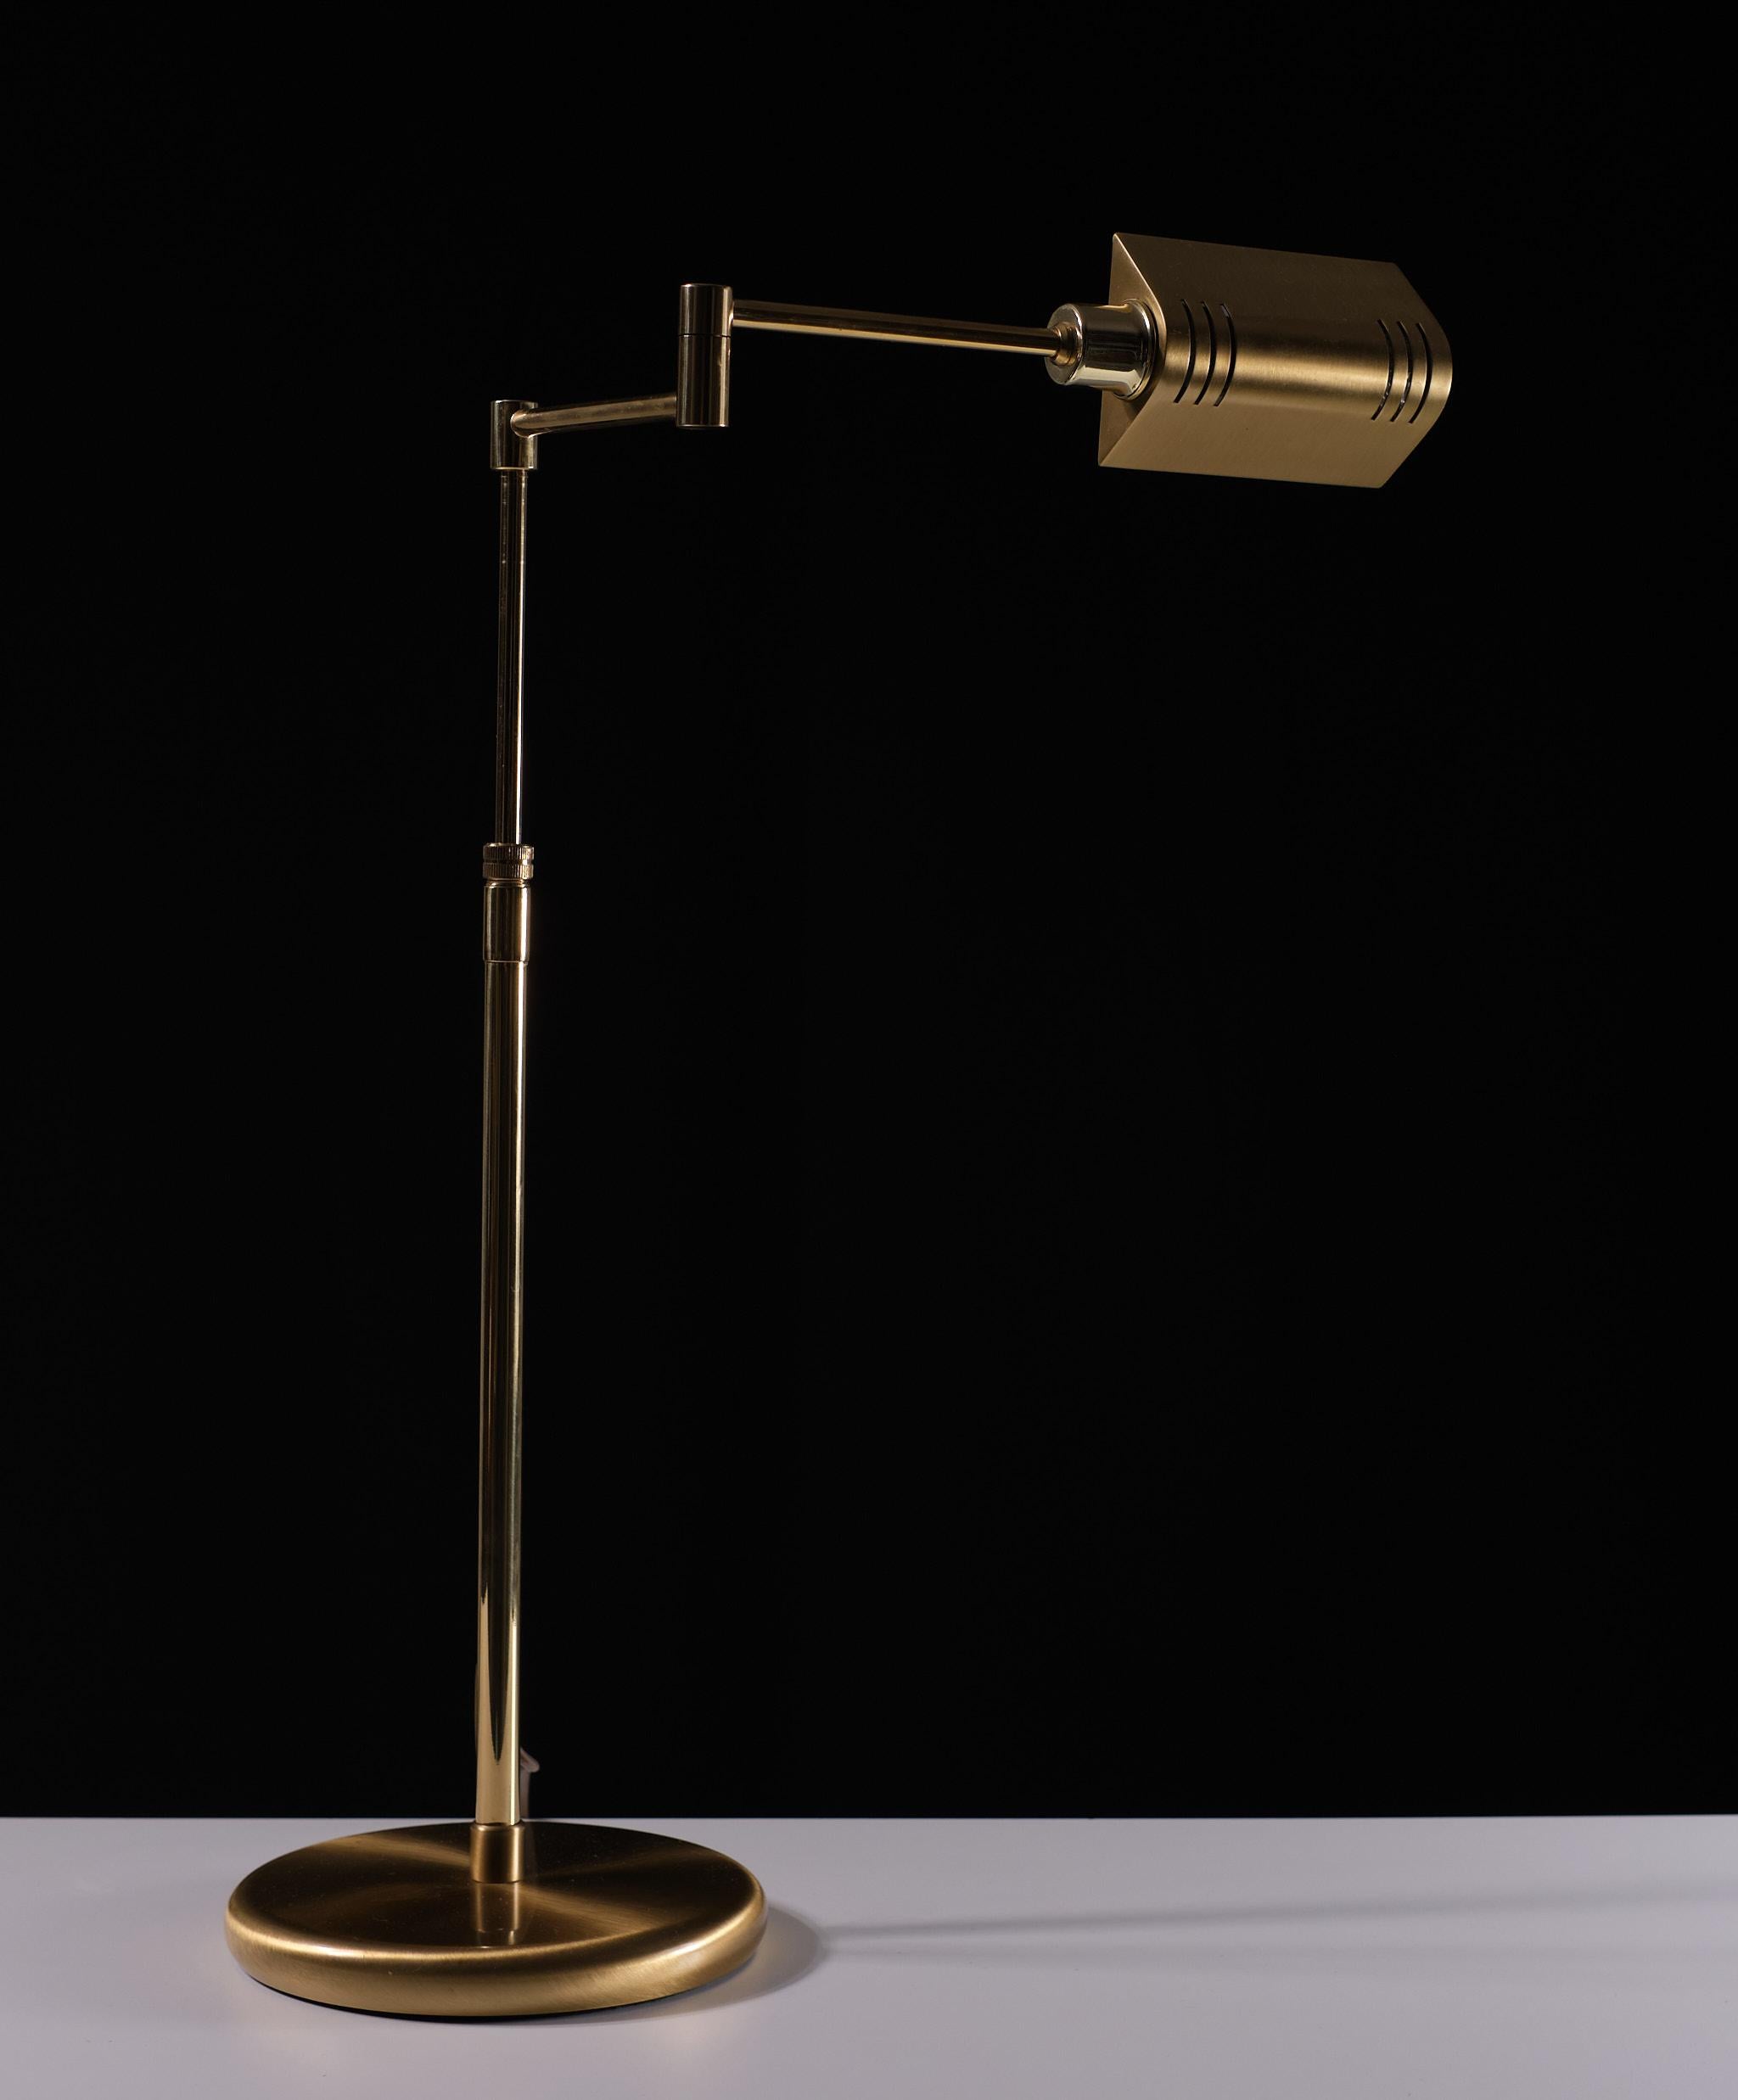 Verstellbare Holtkotter-Tischlampe aus Messing, Deutschland 1980er Jahre (Ende des 20. Jahrhunderts)